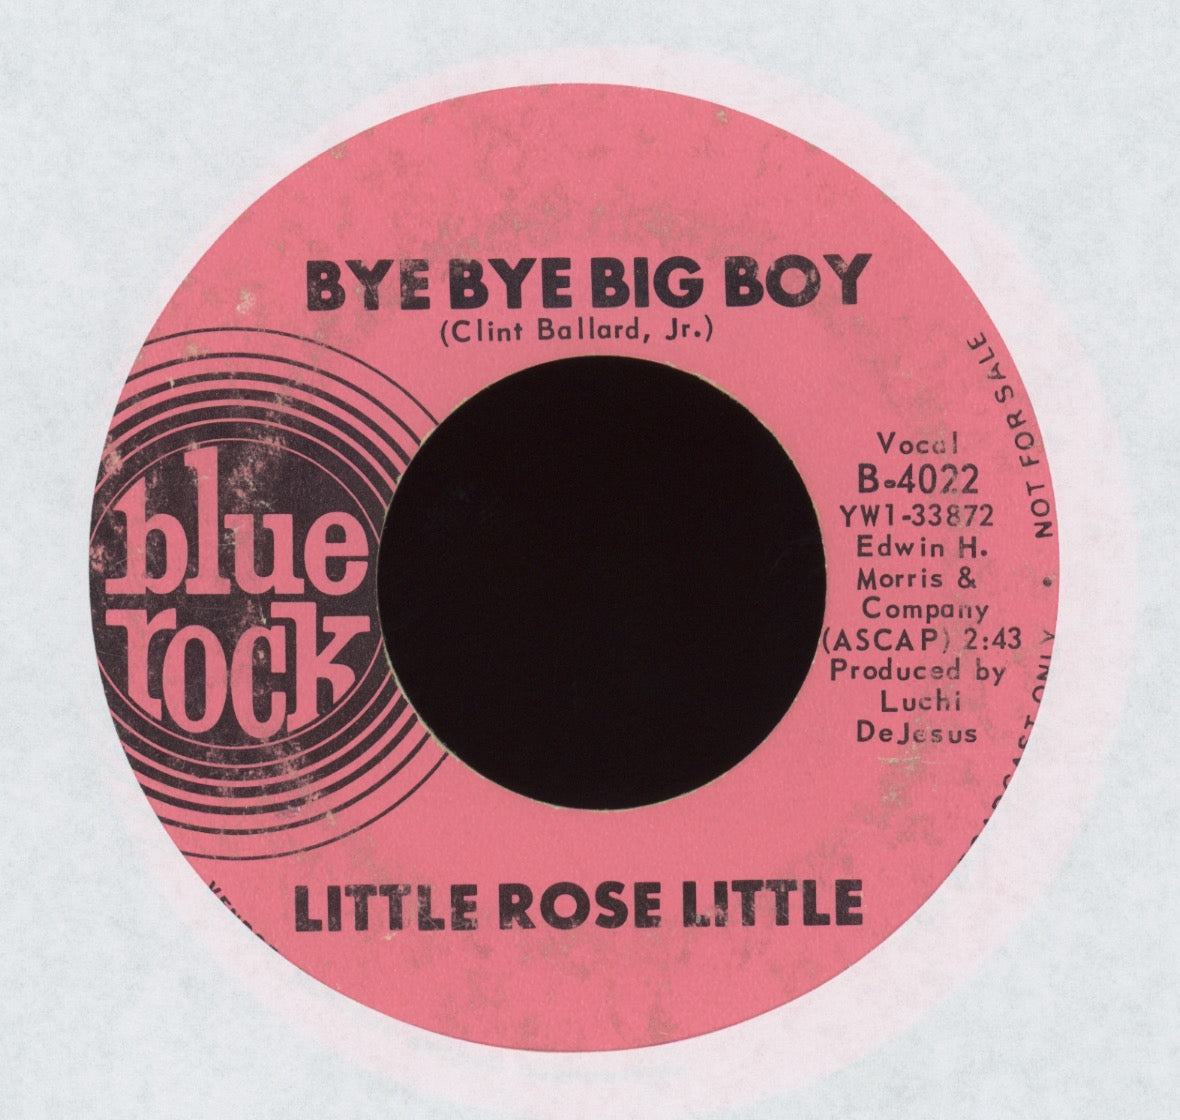 Little Rose Little - Bye Bye Big Boy on Blue Rock Promo